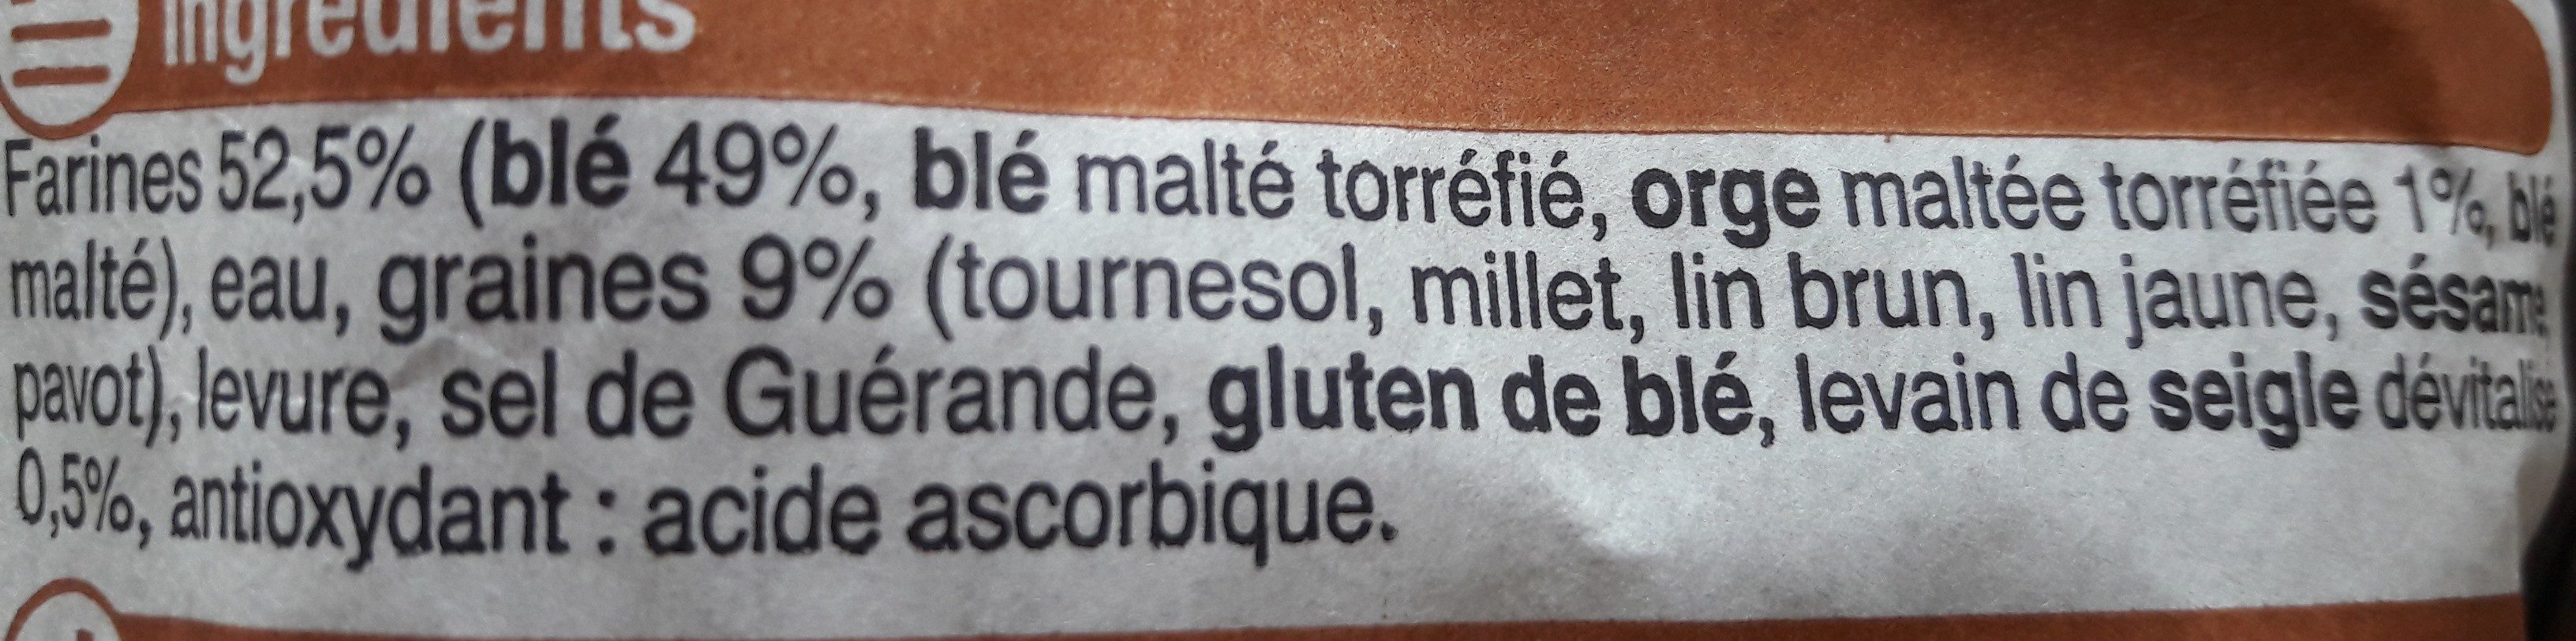 Baguette céréales U, 1 pièce - Ingredients - fr